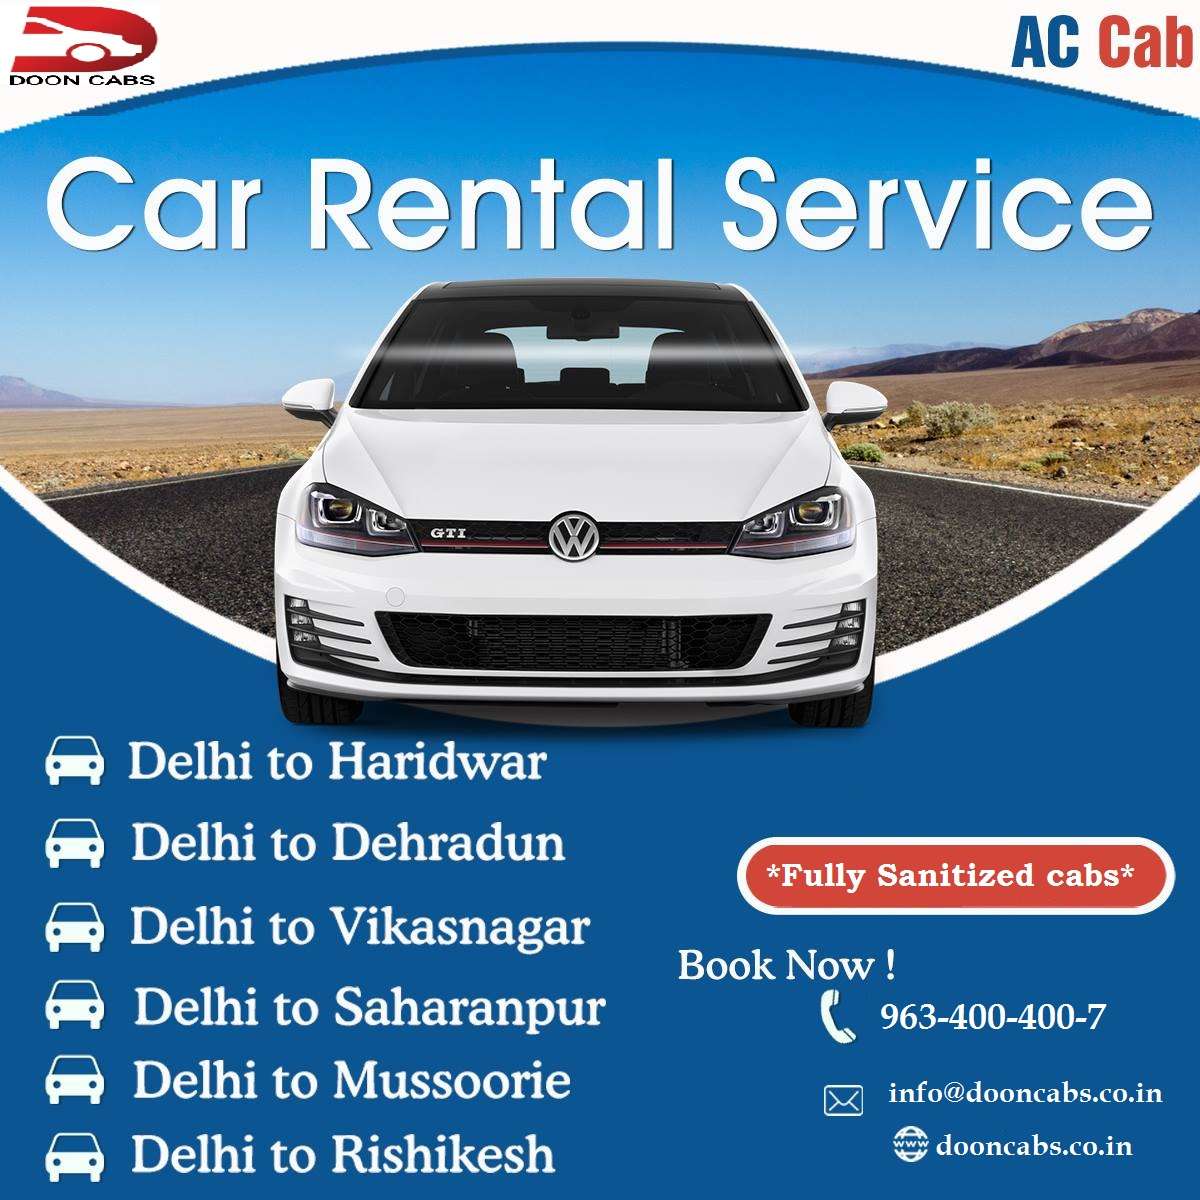 Book Cab Service in Dehradun | Doon Cabs +91 9634004007 | Taxi service